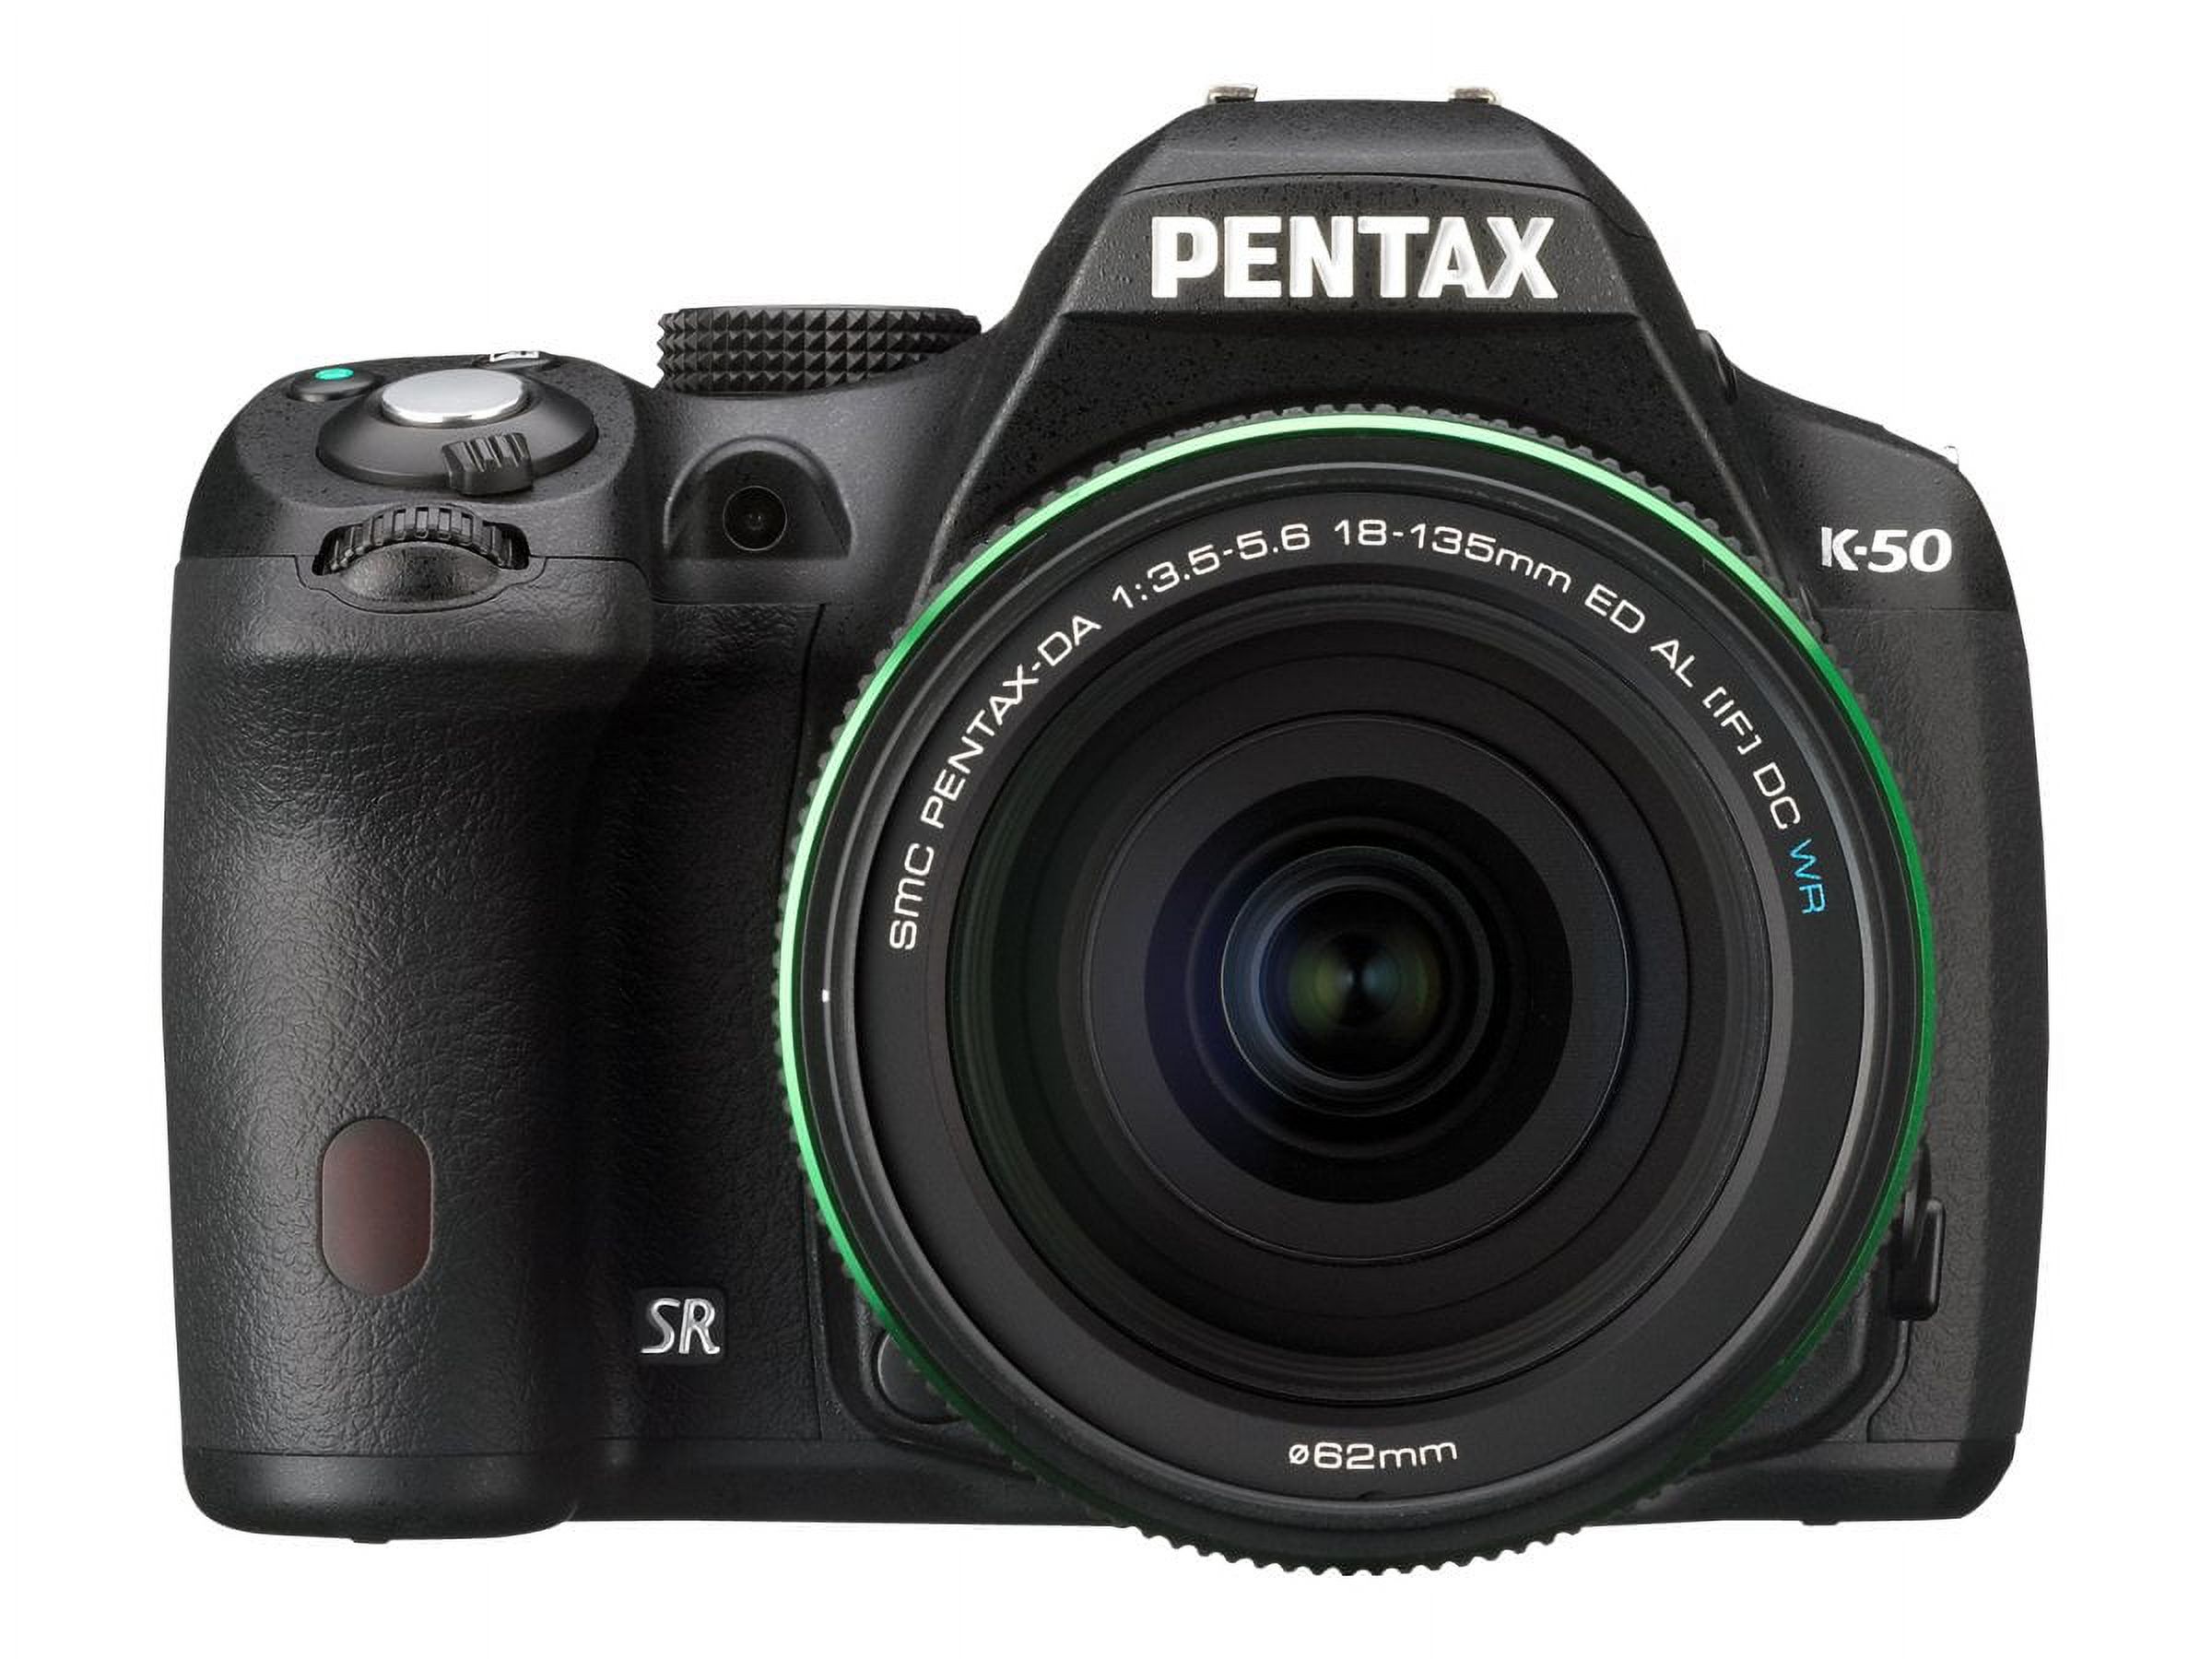 Pentax K-50 16.3 Megapixel Digital SLR Camera Body Only, Black - image 4 of 11